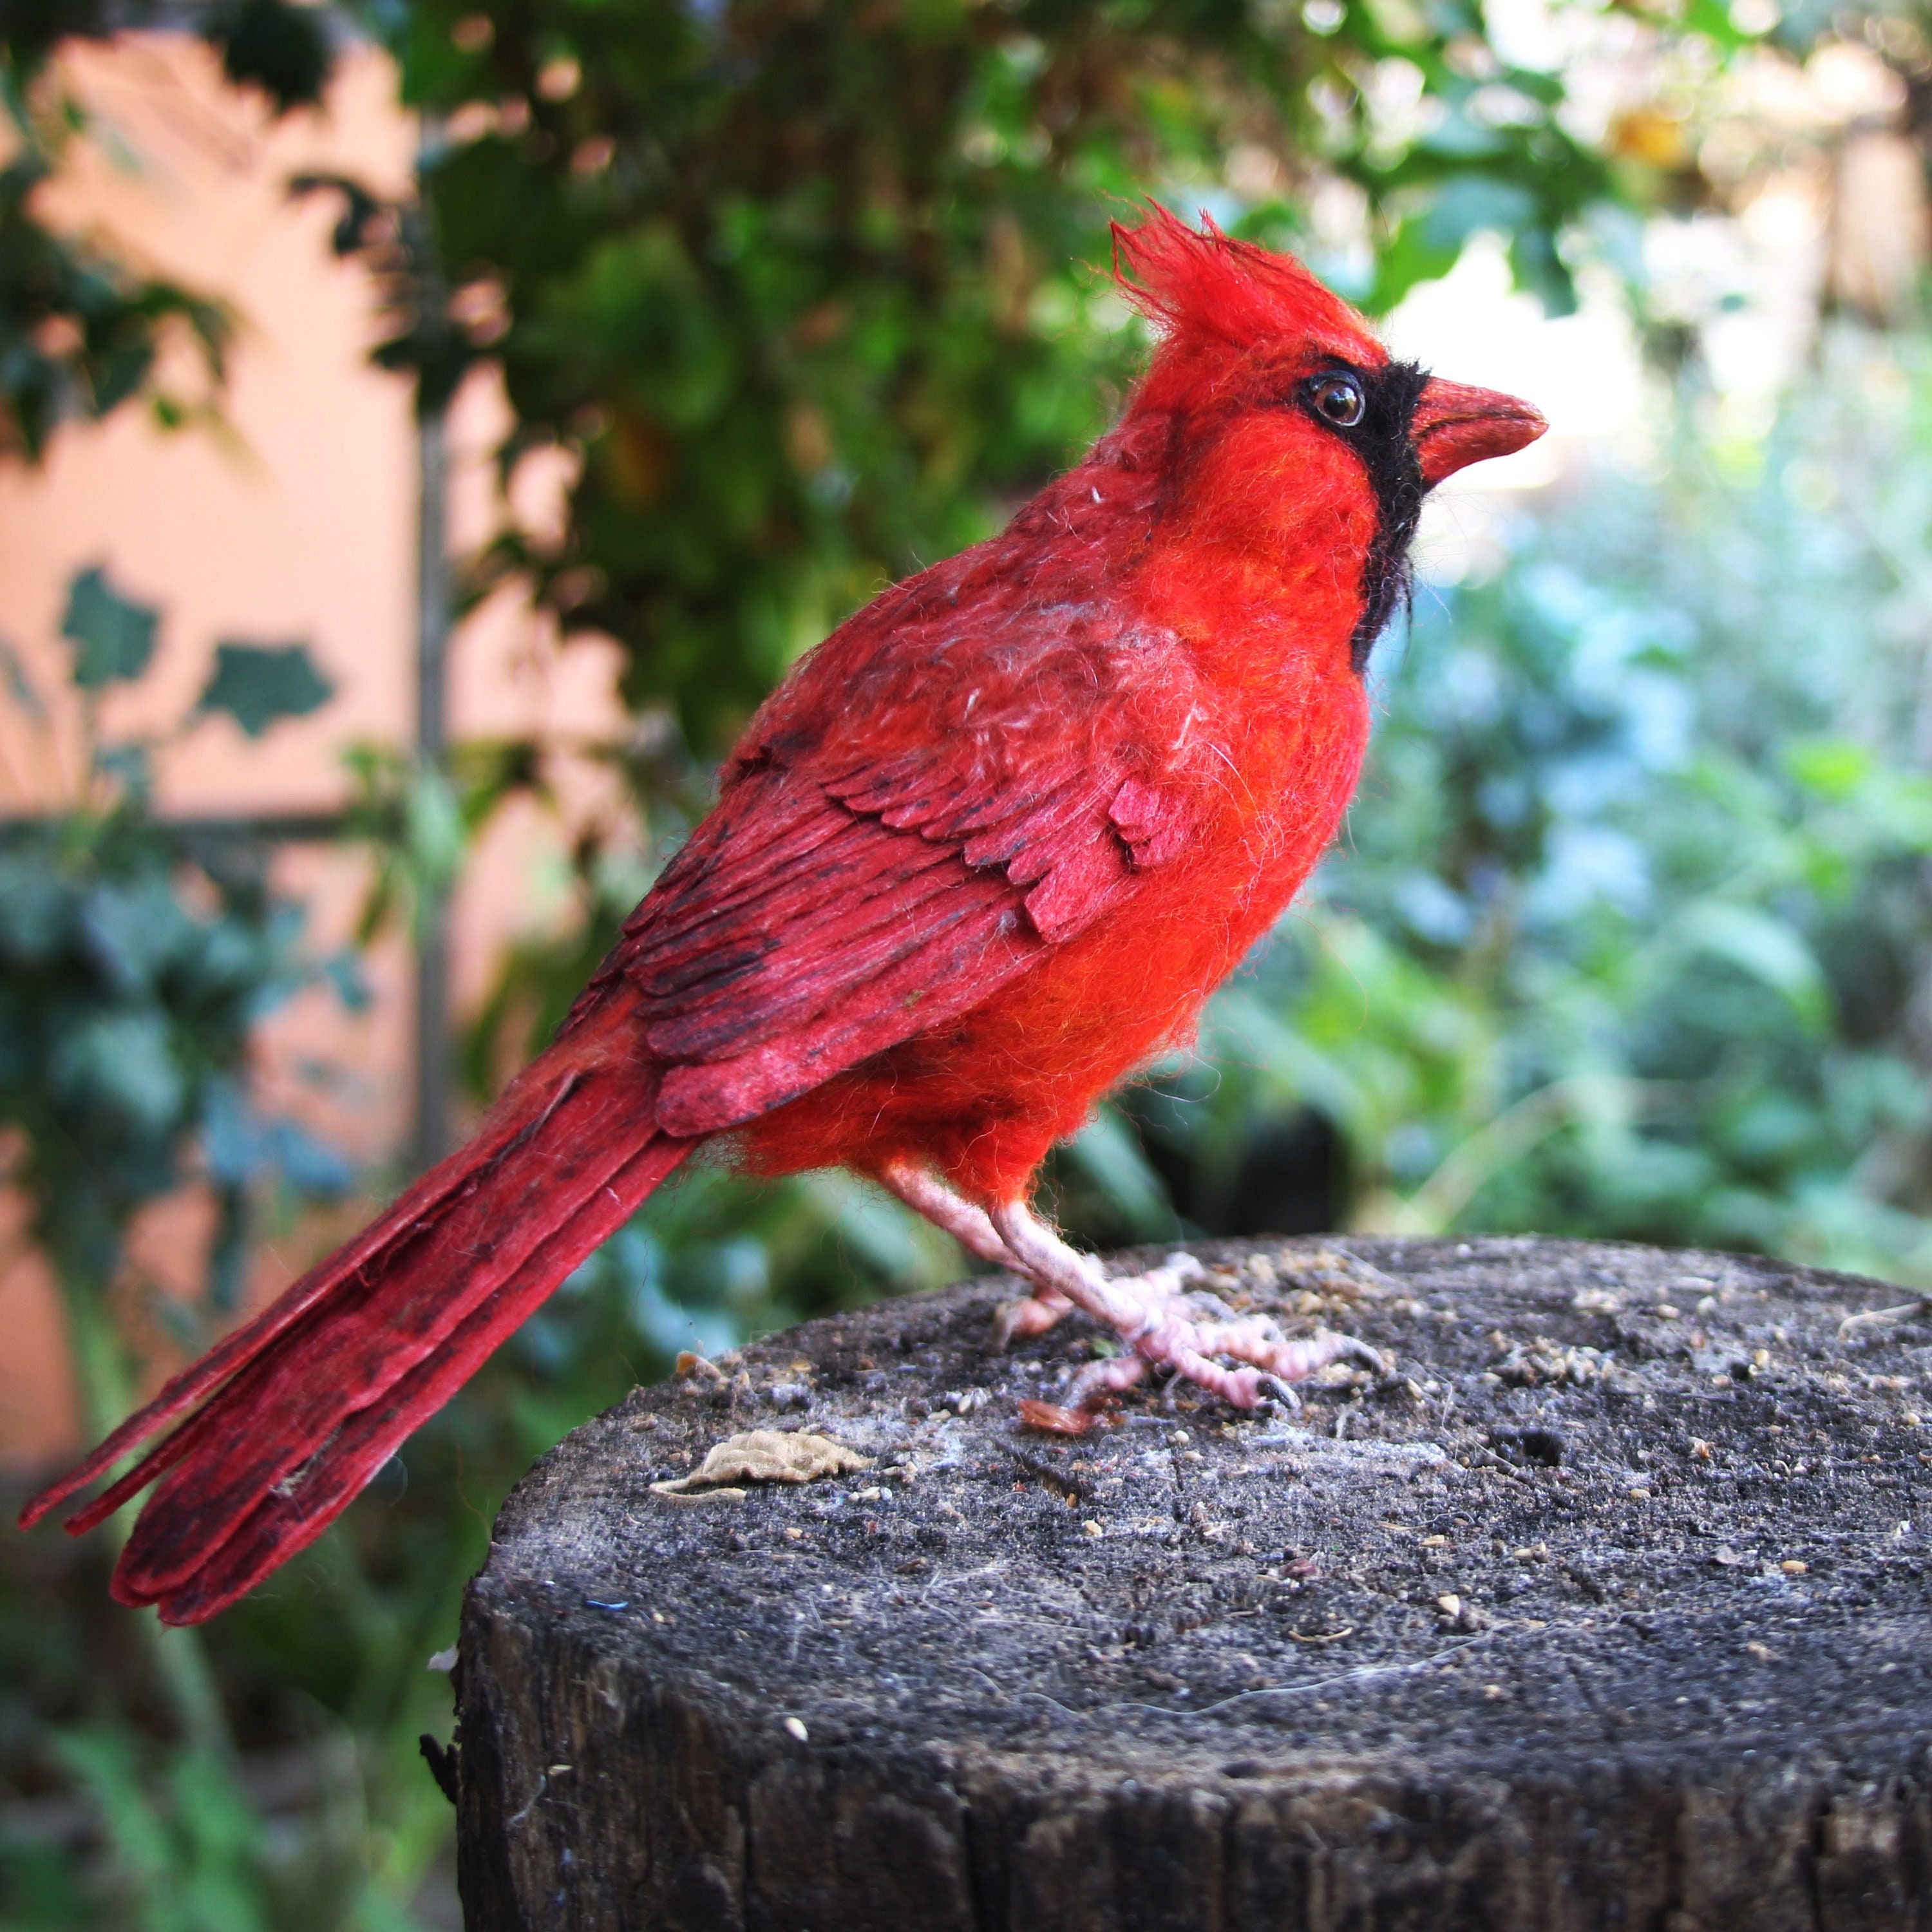 St. Louis Cardinals (Cardinal) – Felt Collectibles